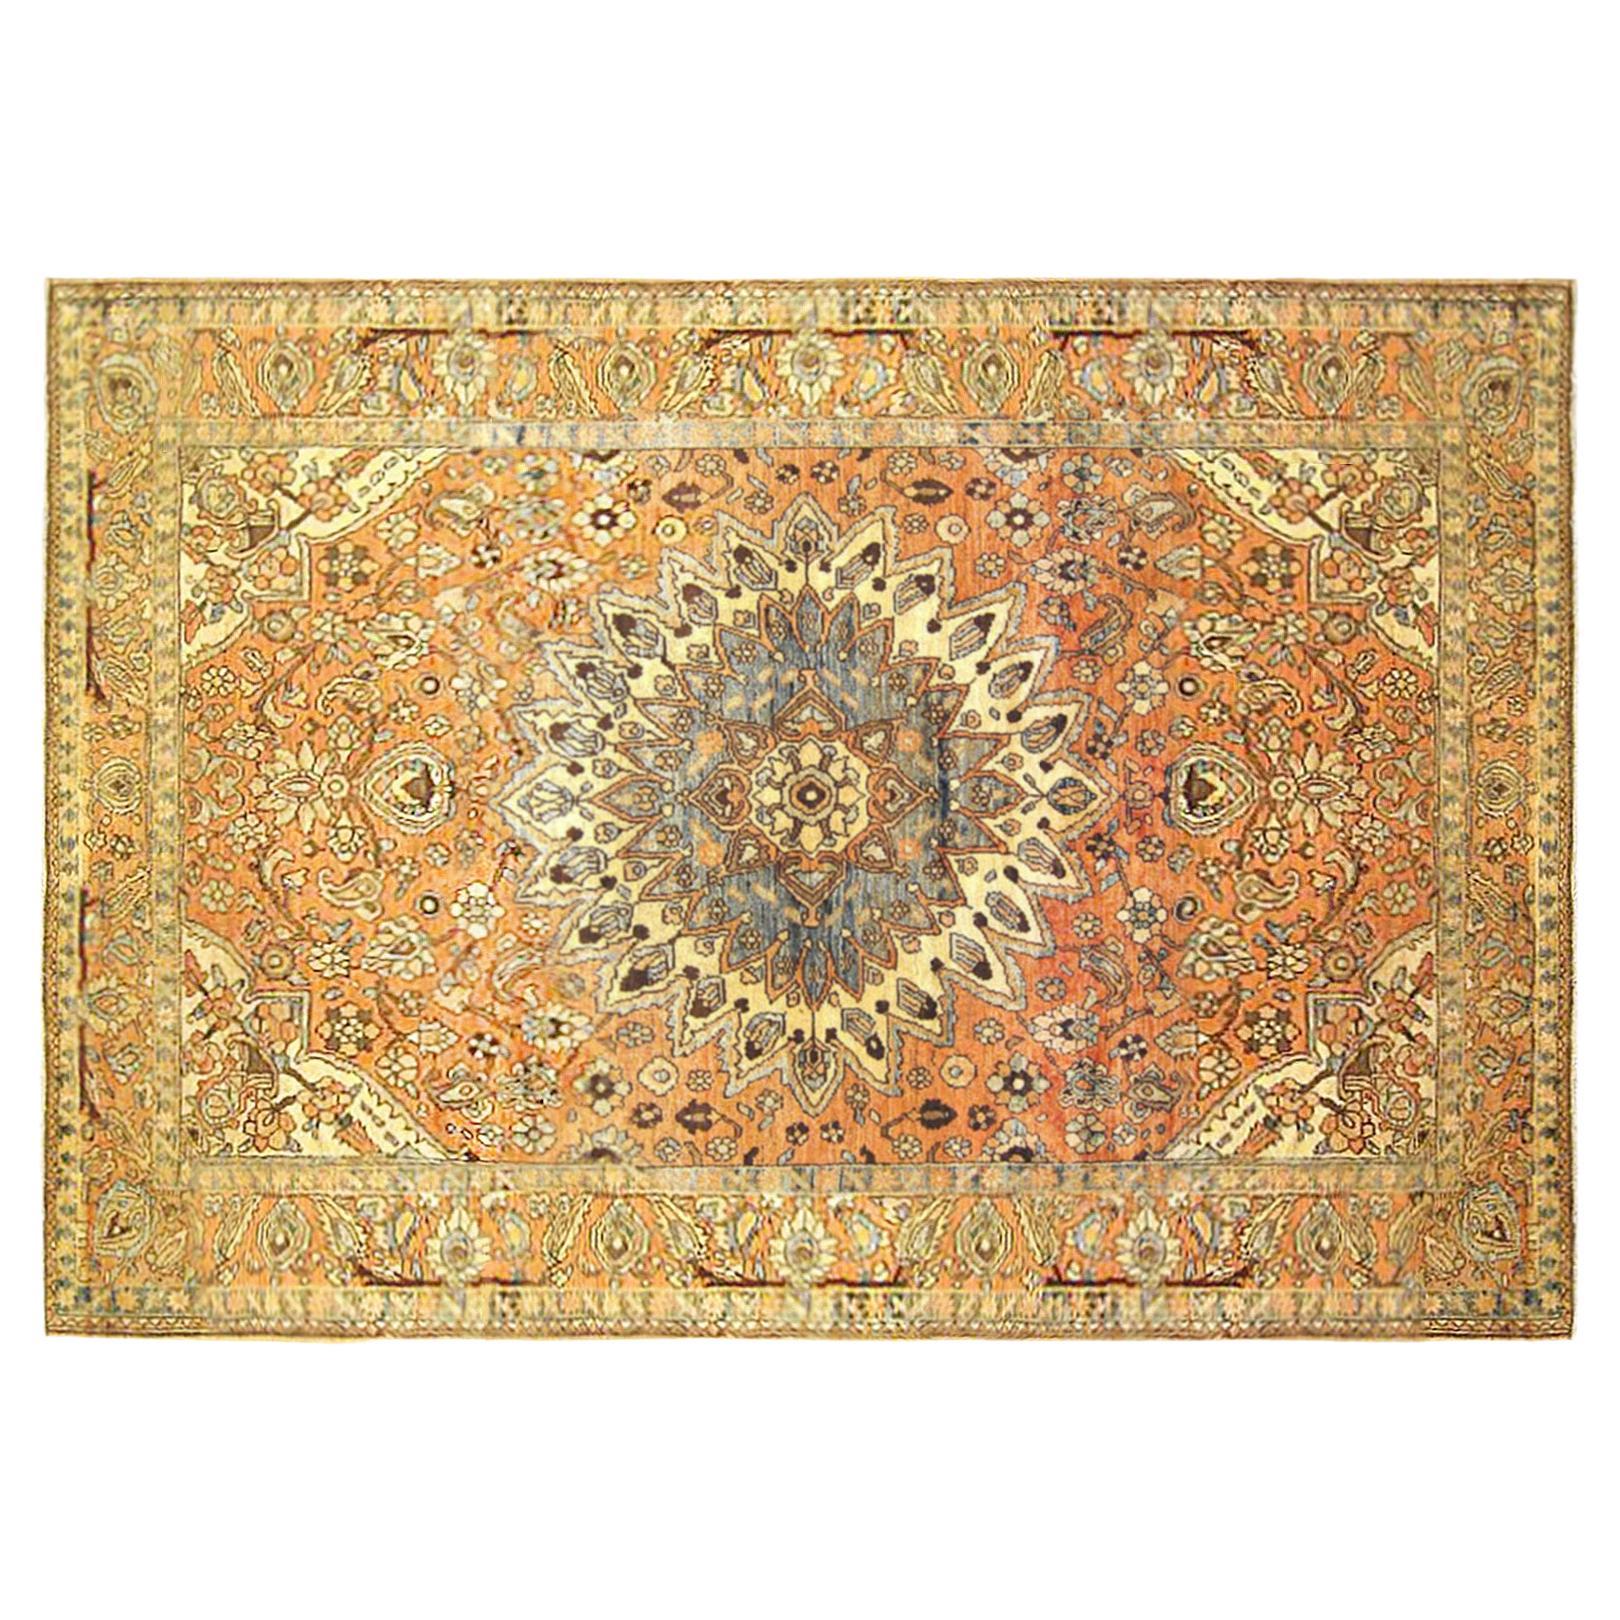 Persischer Baktiari- Orientalischer Teppich, in kleiner Gre, mit zentralem Medaillon